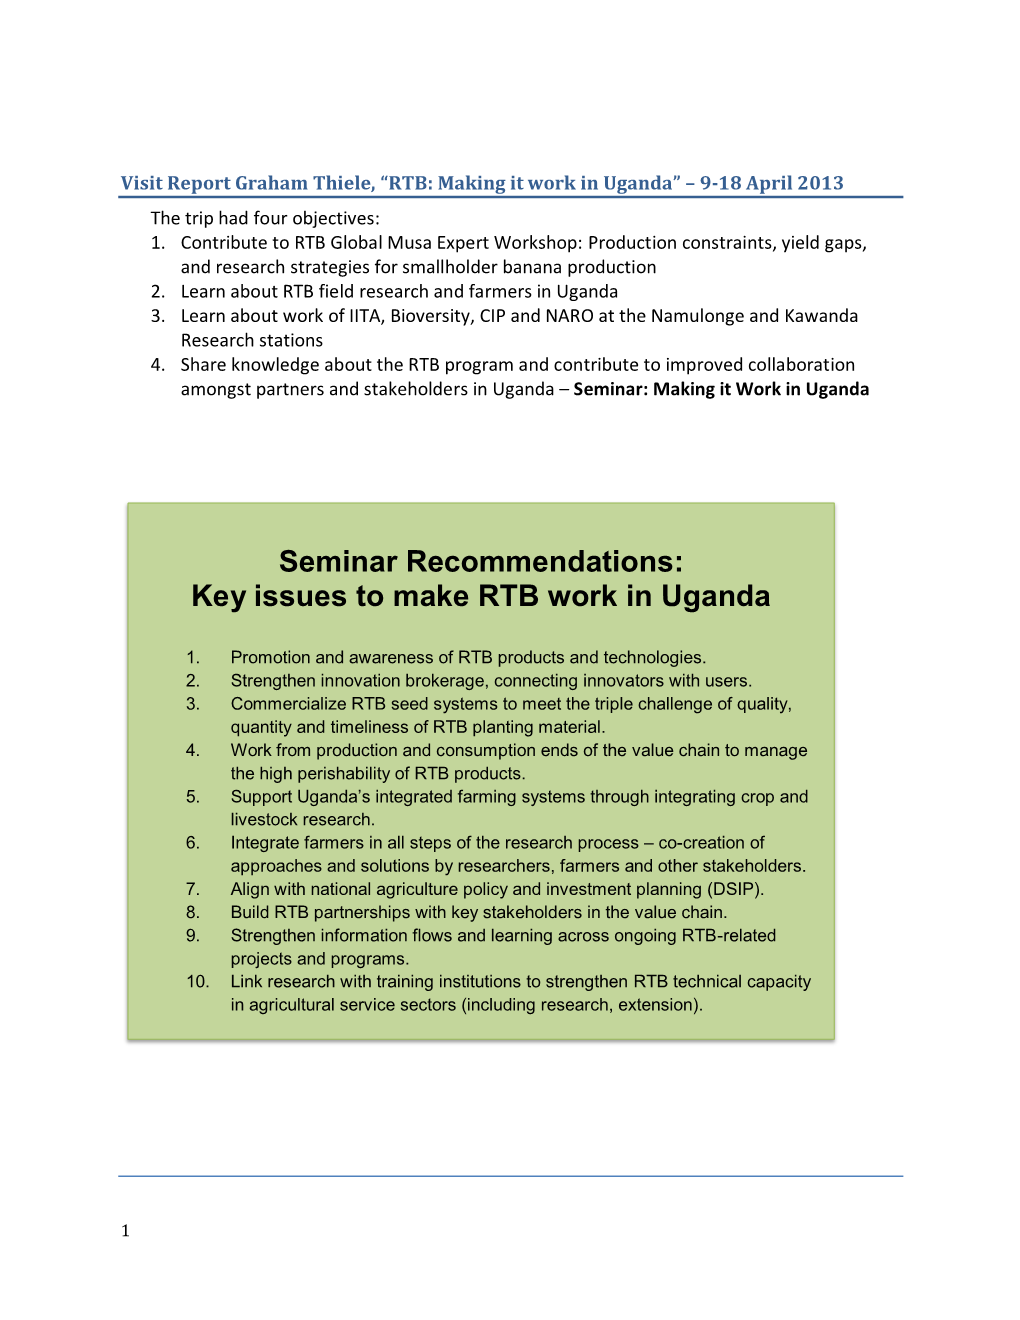 Key Issues to Make RTB Work in Uganda